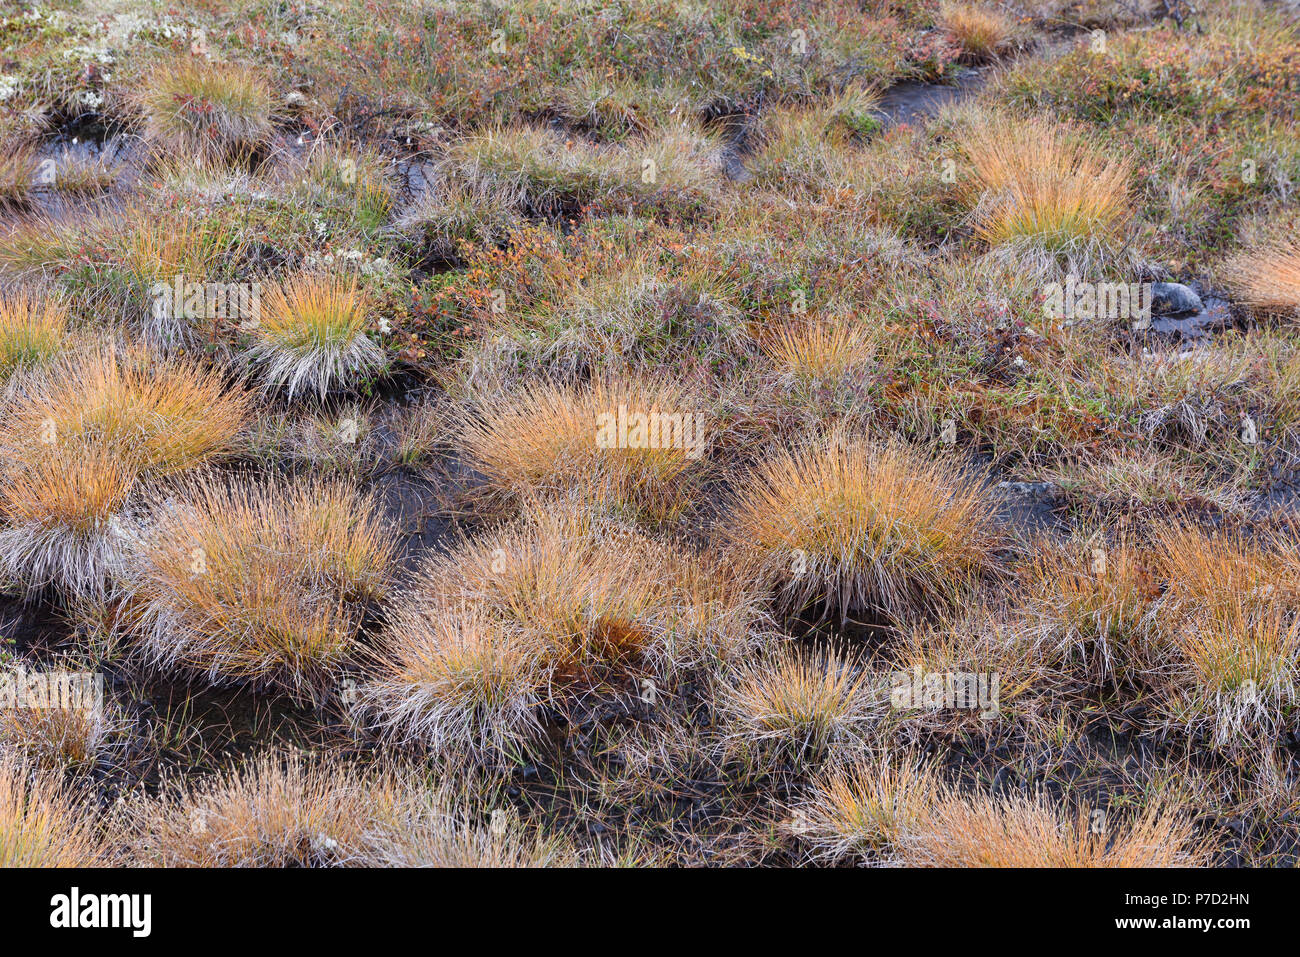 Les herbes poussent dans un paysage marécageux dans une montagne à l'automne, le Parc National de Rondane, Norvège Banque D'Images